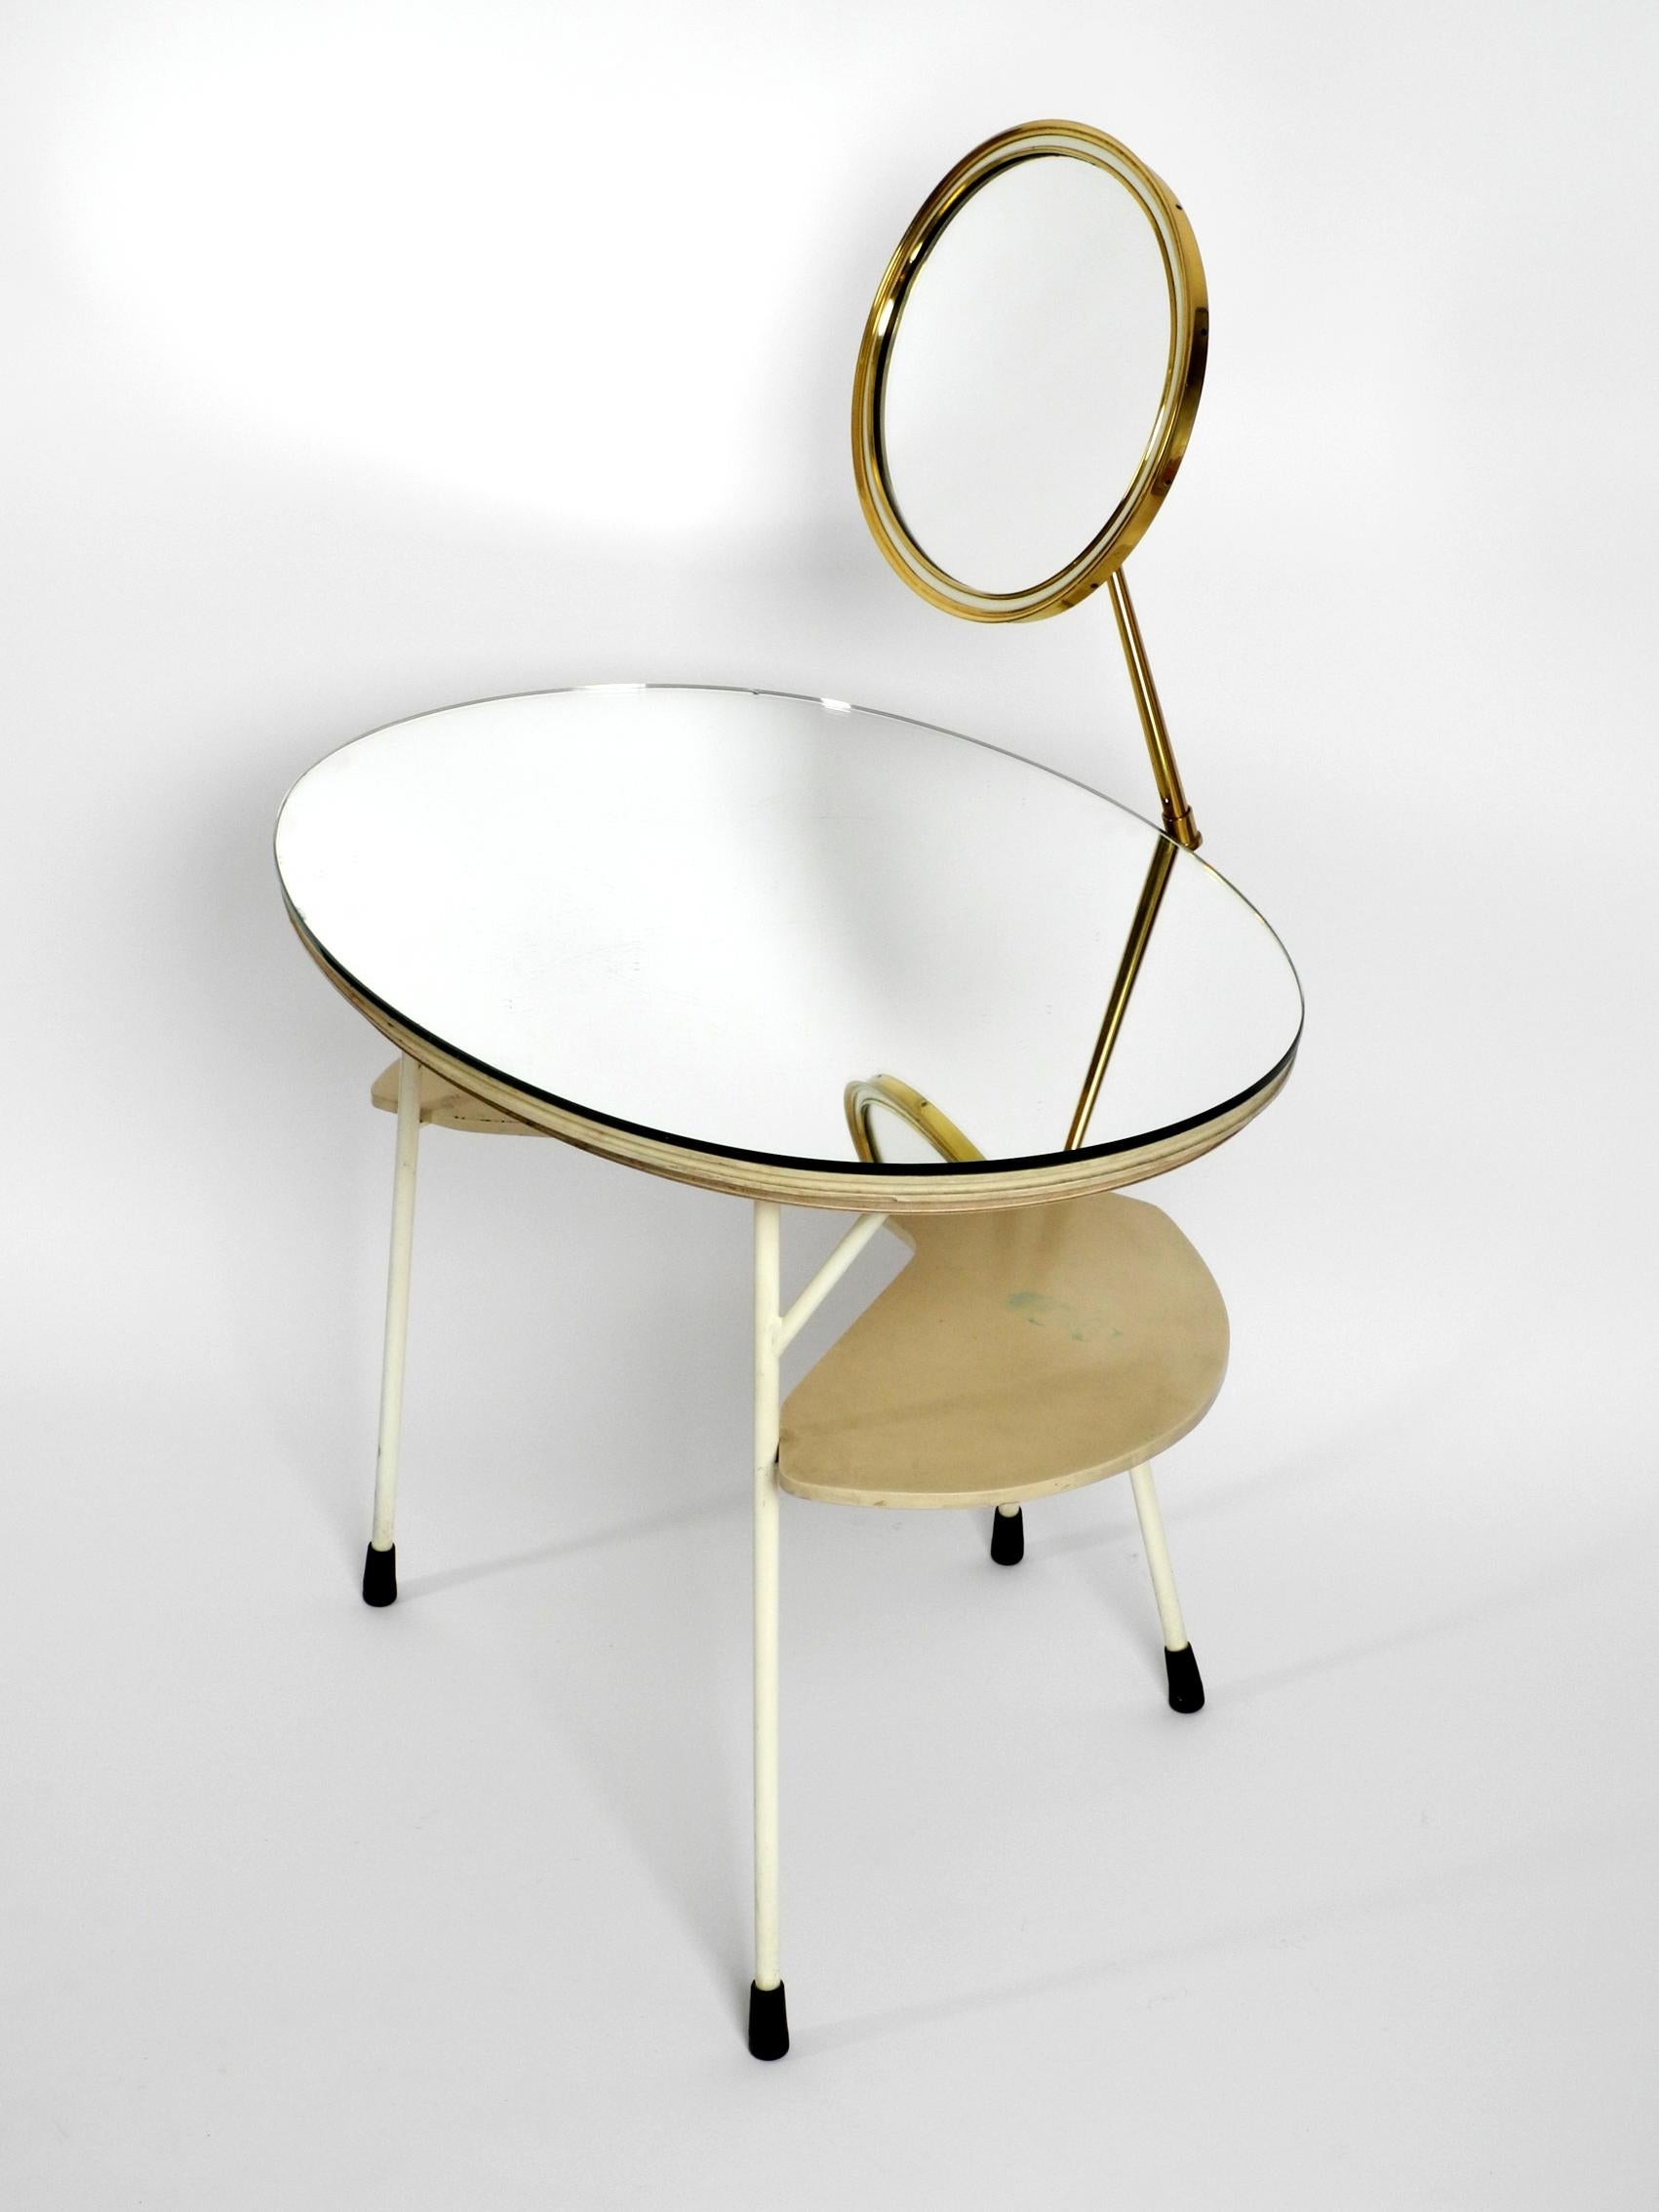 German Mid-Century Modern Make Up Mirror Dressing Table from the Vereinigte Werkstätten